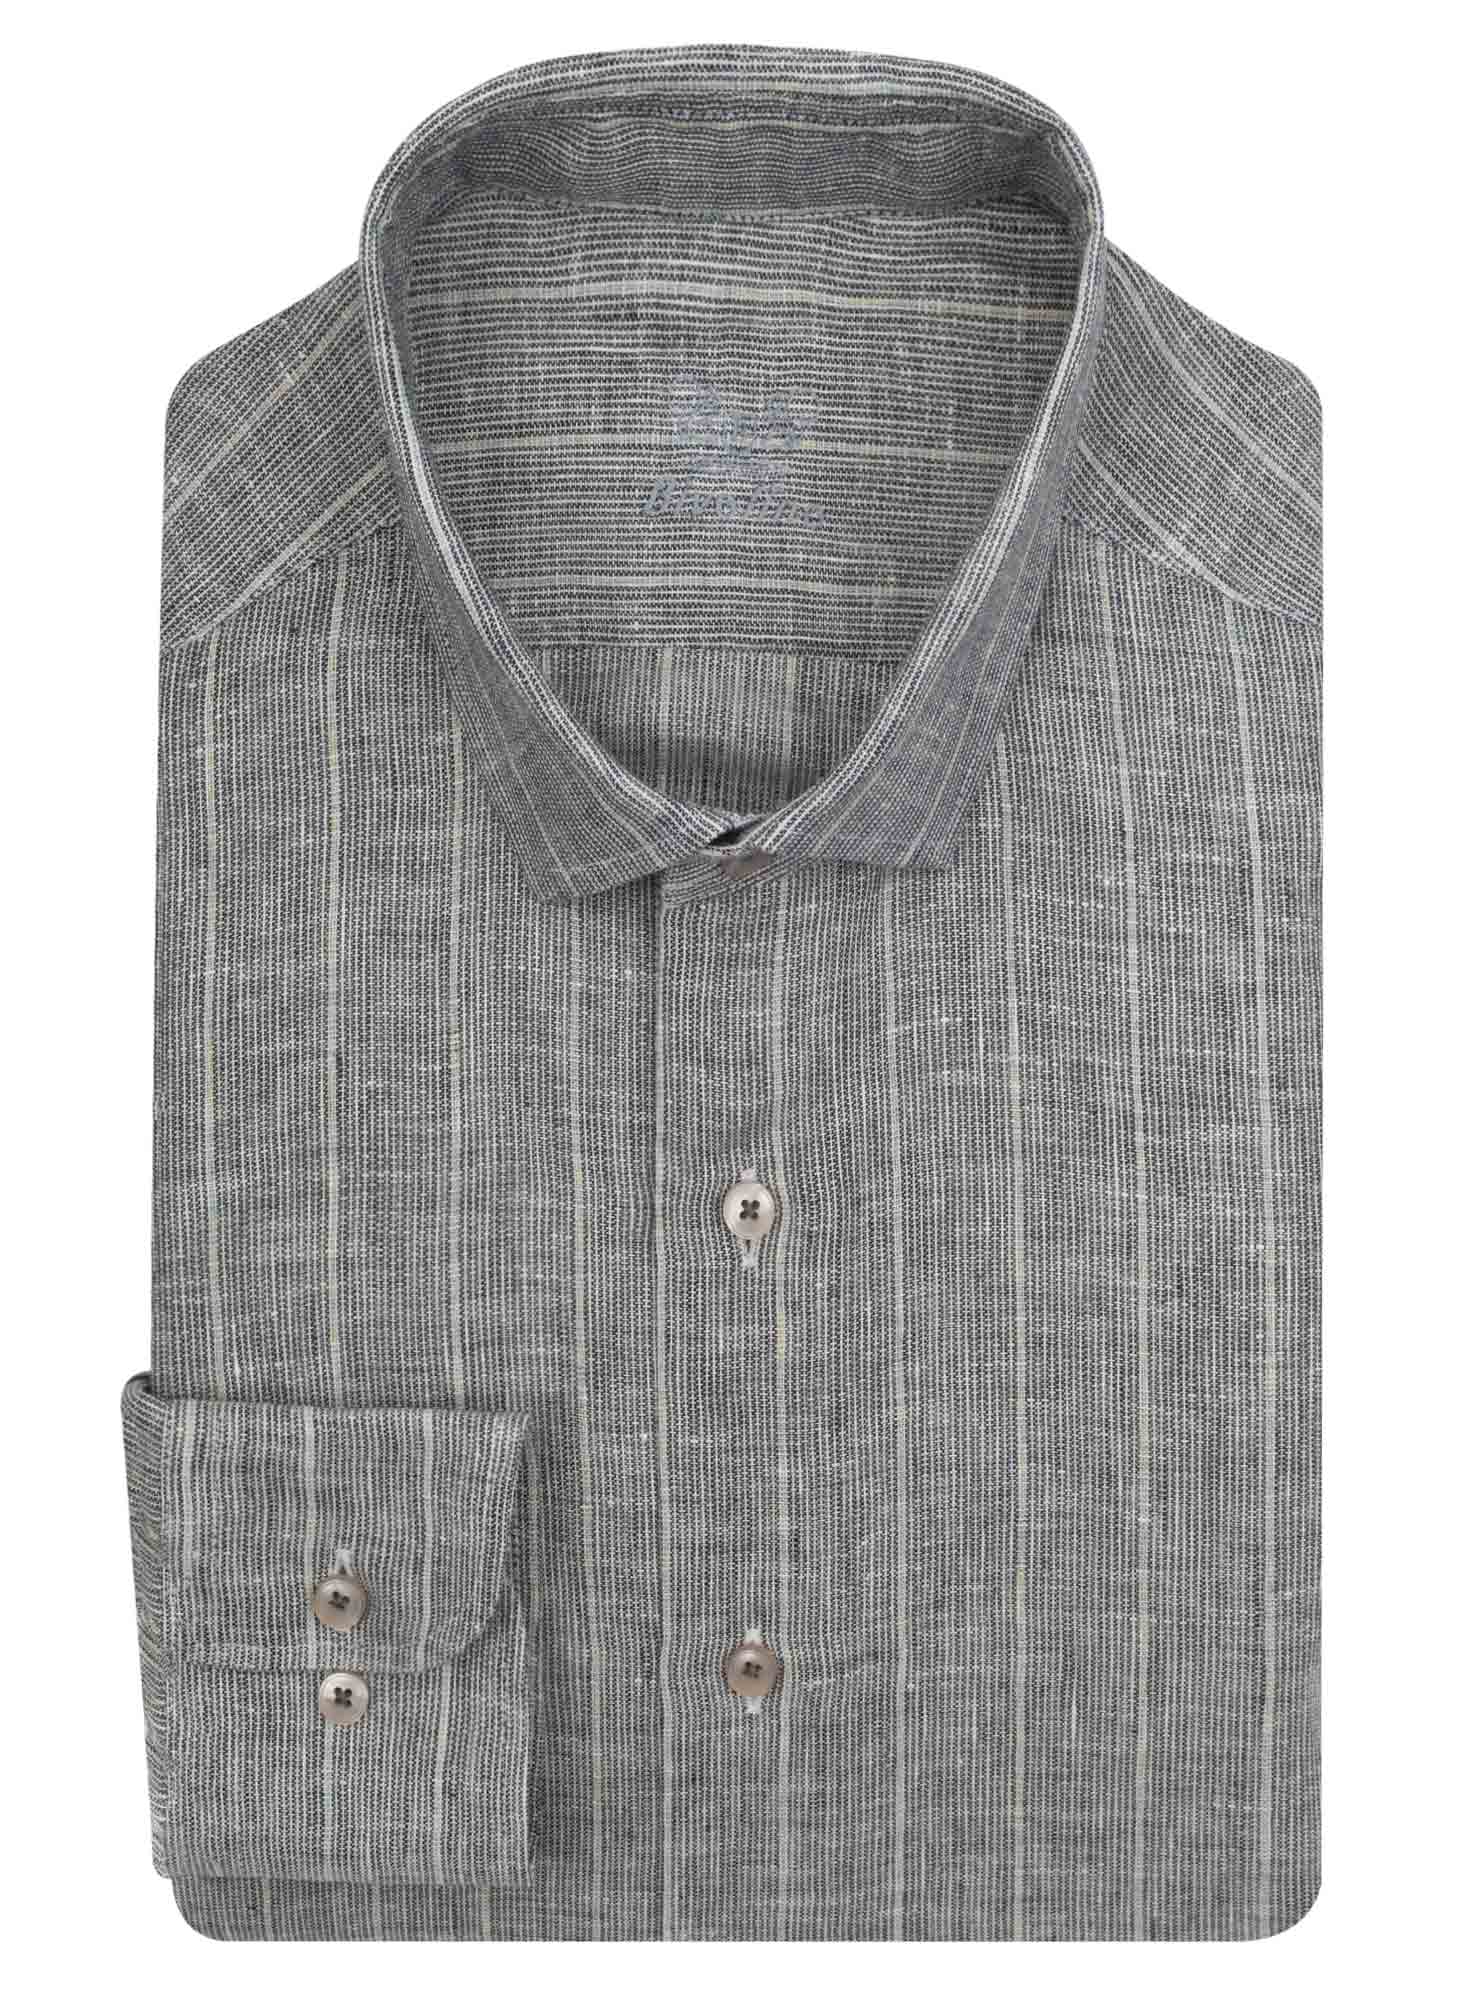 TRAPANI - grey pinstripe linen shirt - NEON 8